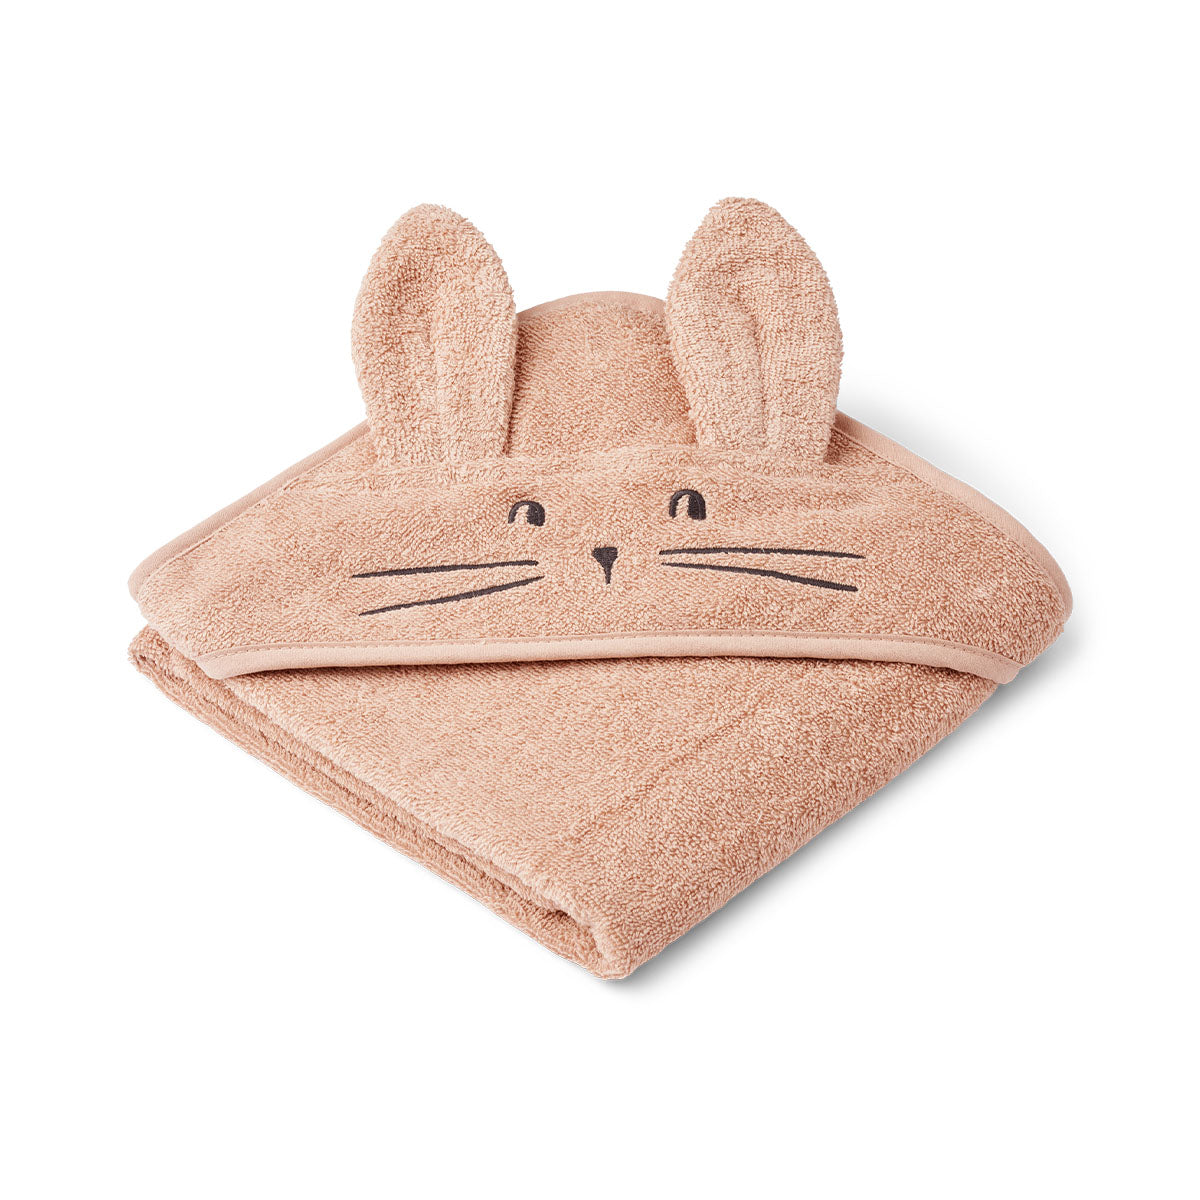 Je kleintje lekker inwikkelen na een heerlijk badje? Met de Liewood Albert badcape rabbit pale tuscany houd je je kleintje lekker warm. De badcape voor kinderen is gemaakt van 100% biologisch katoen, waardoor het lekker zacht aanvoelt op de huid. VanZus